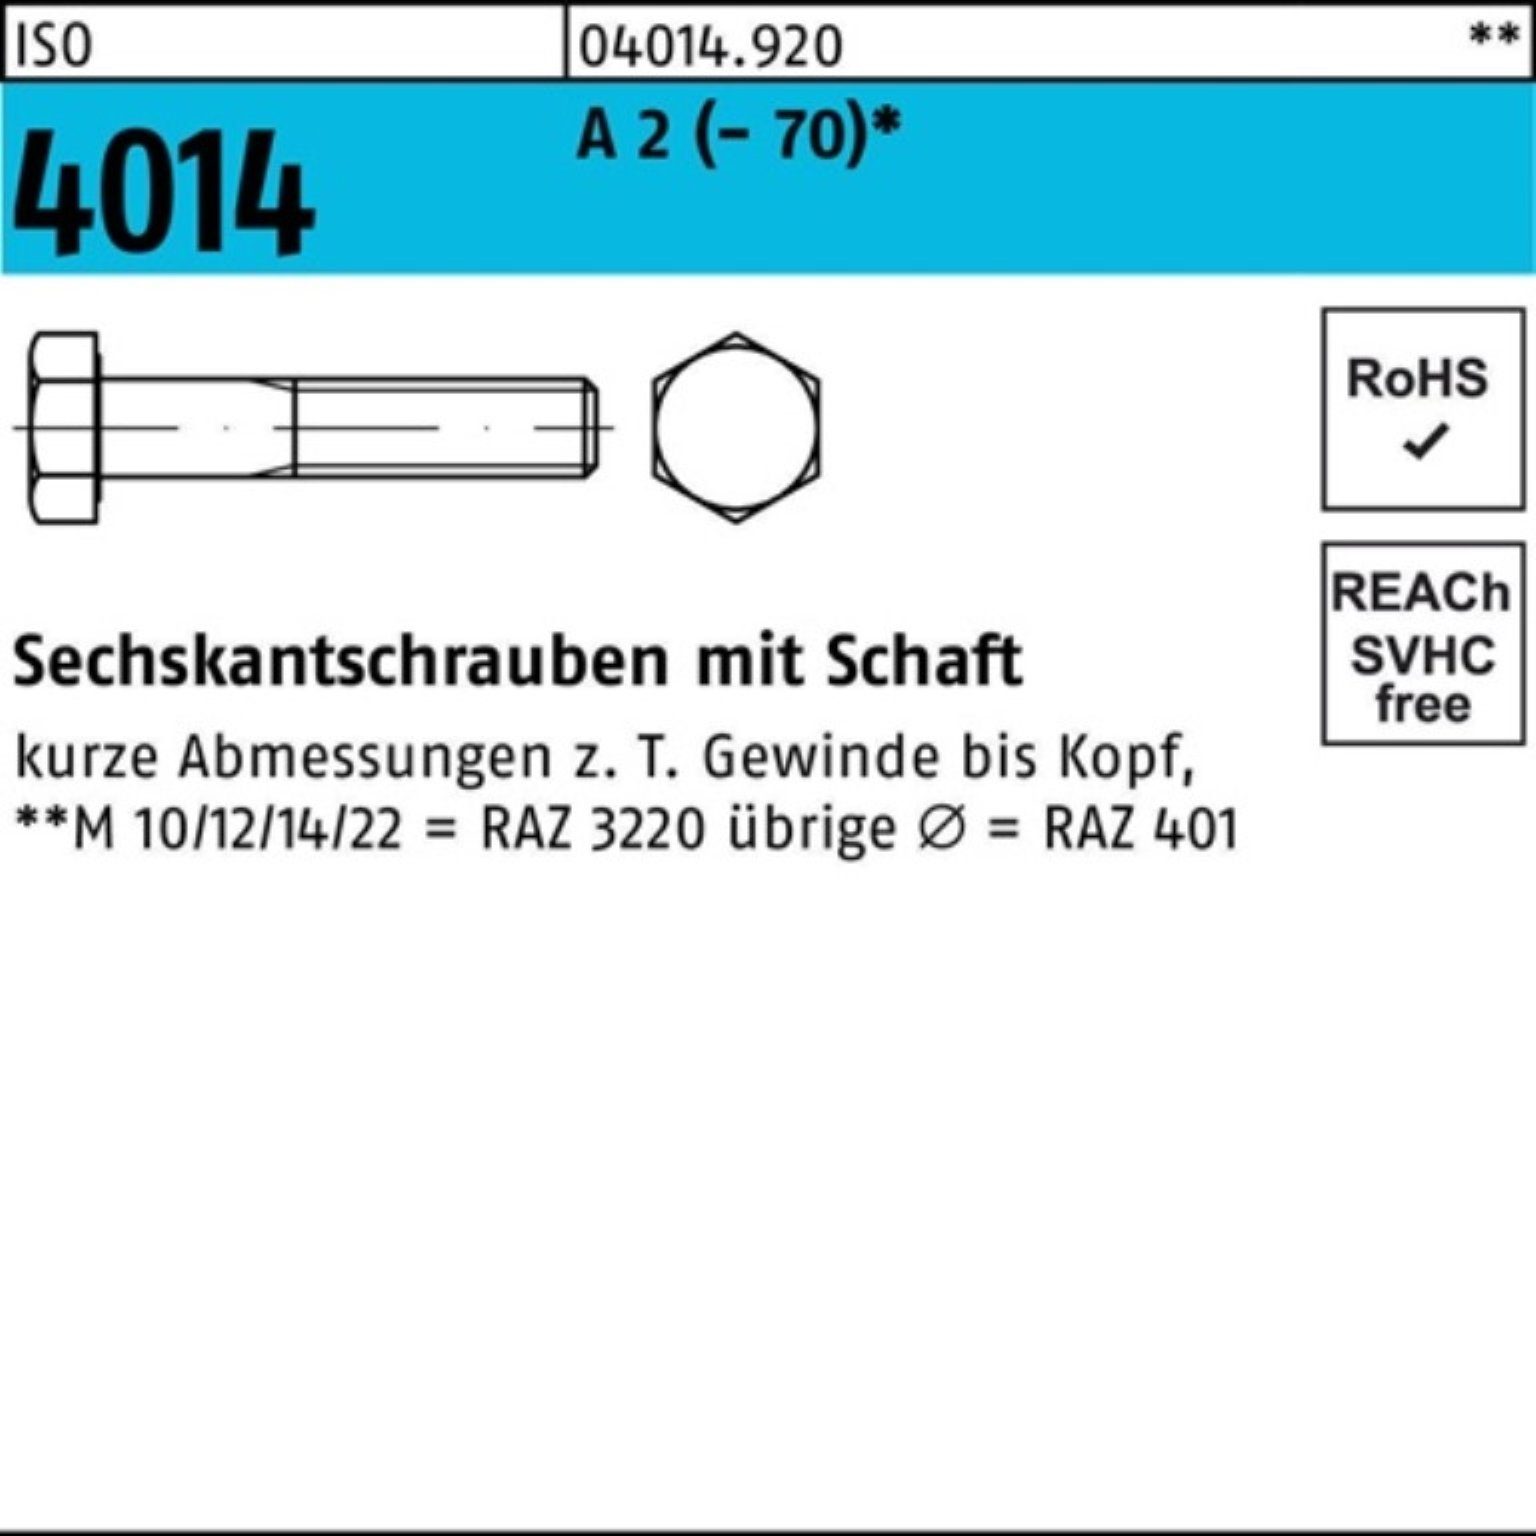 Bufab Sechskantschraube 100er Pack Sechskantschraube ISO 4014 Schaft M10x 60 A 2 (70) 50 St